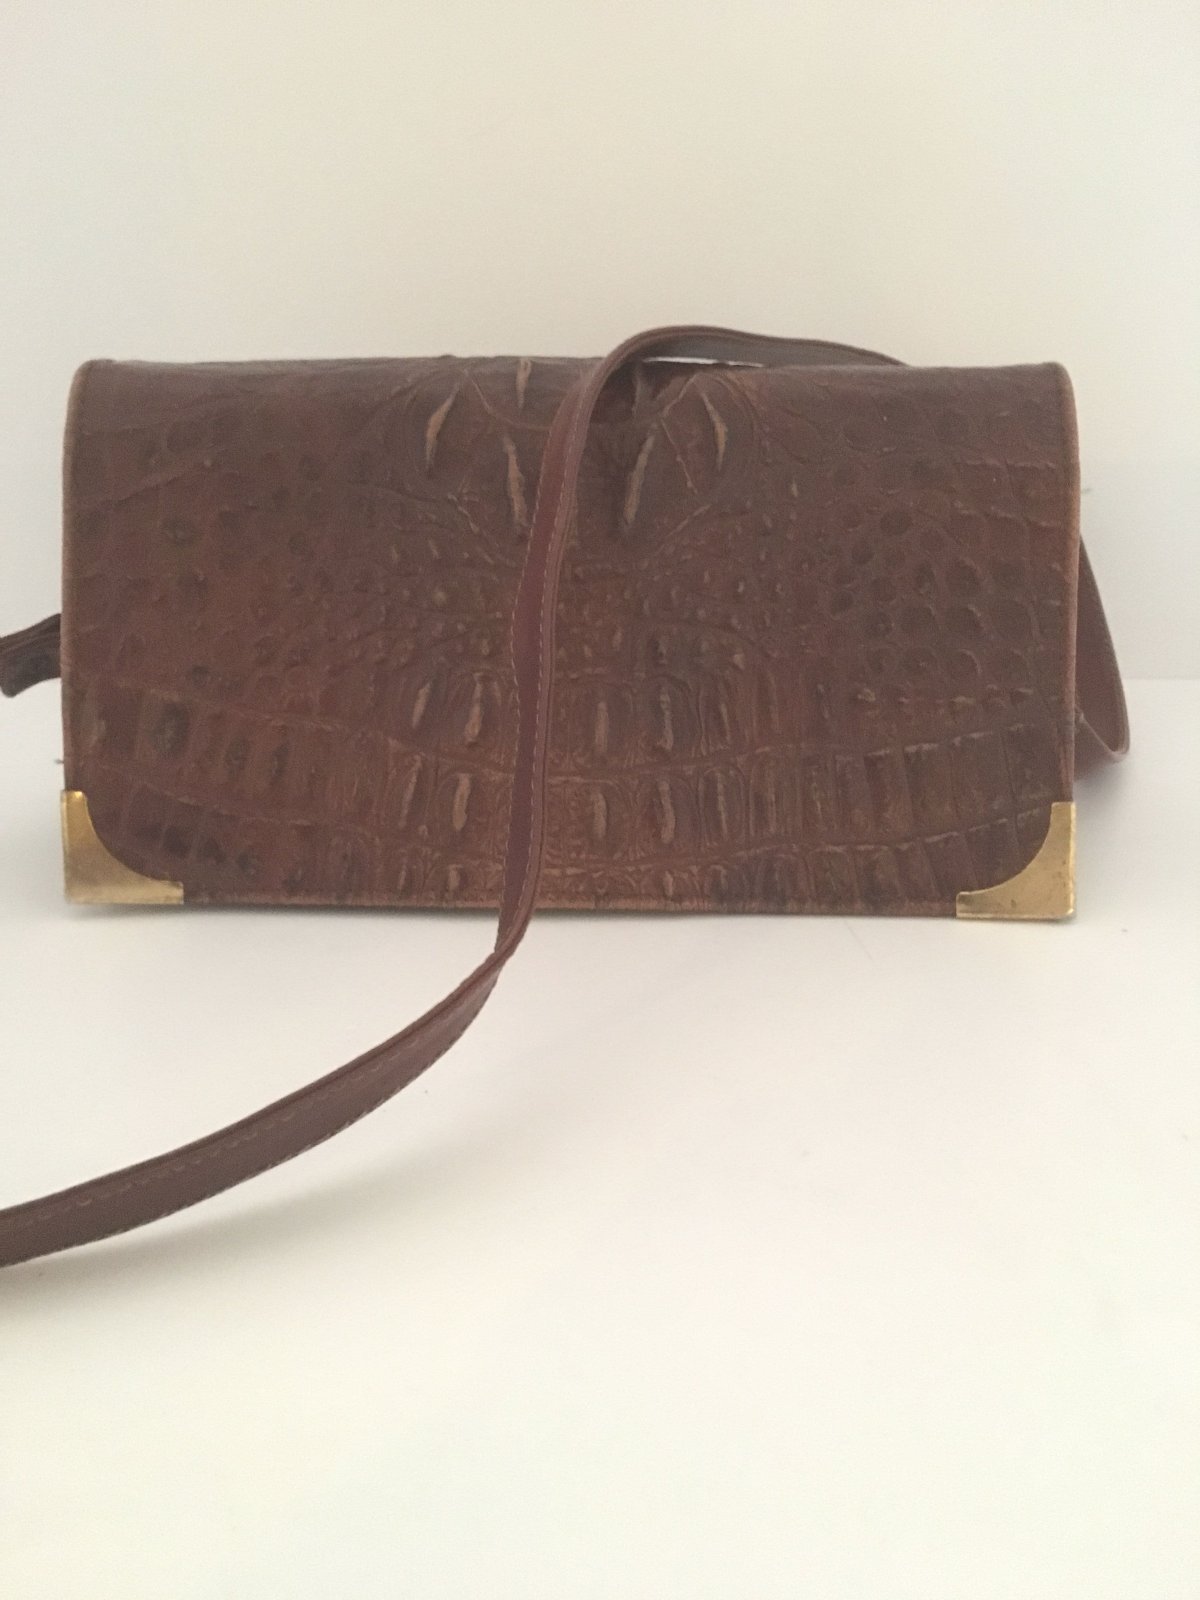 Unik Vintage taske i læder præget krokodille skind. - Vintage i læder og skind - Læderprojektet